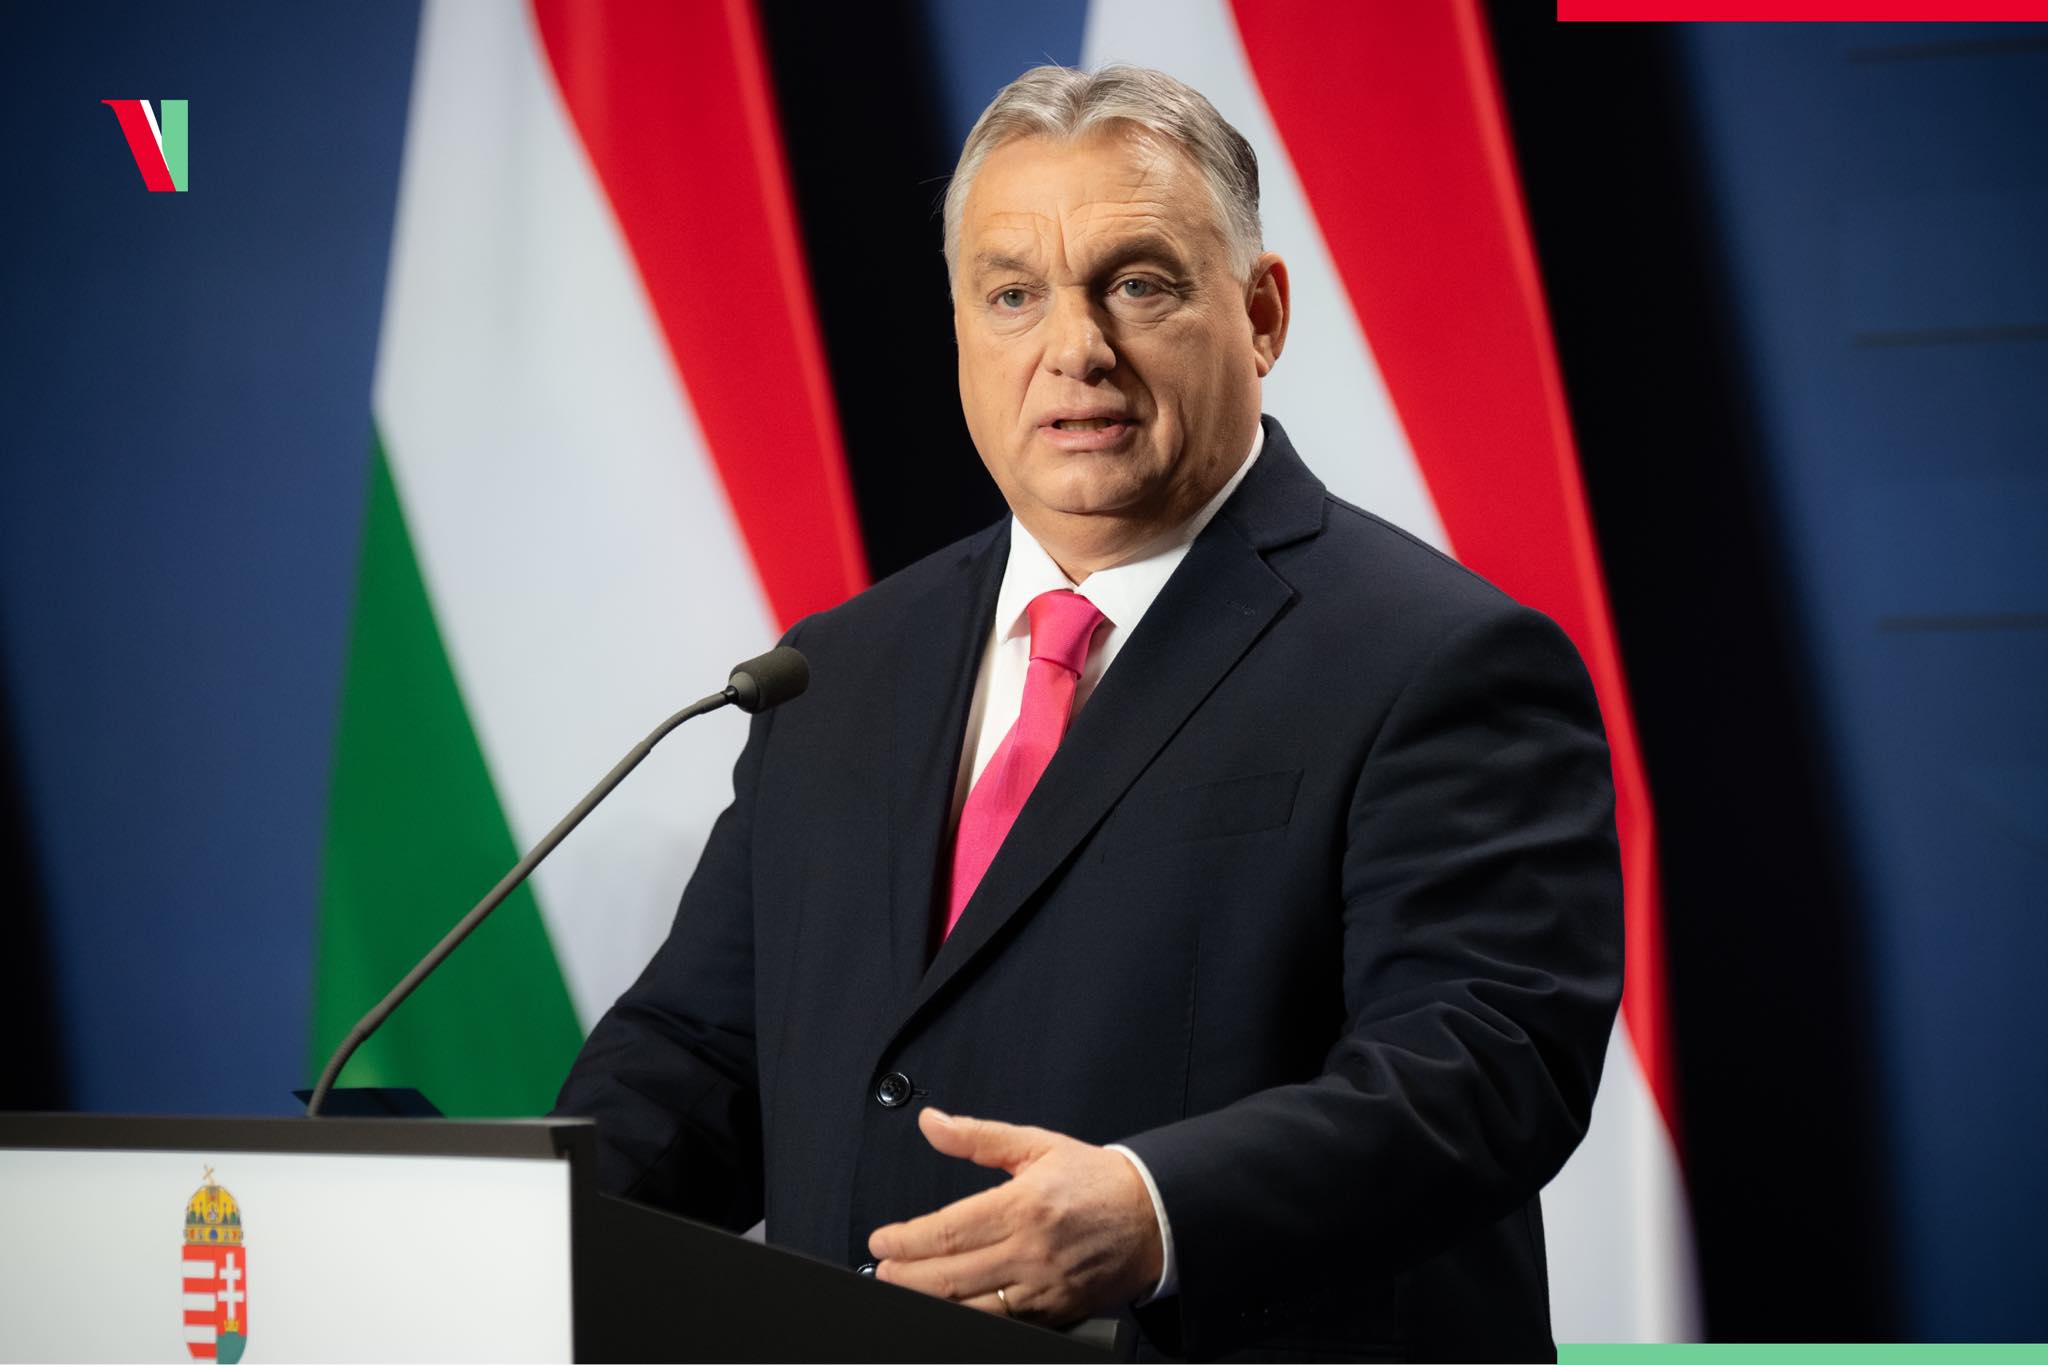 Viktor Orban, prietenul lui Putin, devine președintele Consiliului UE.